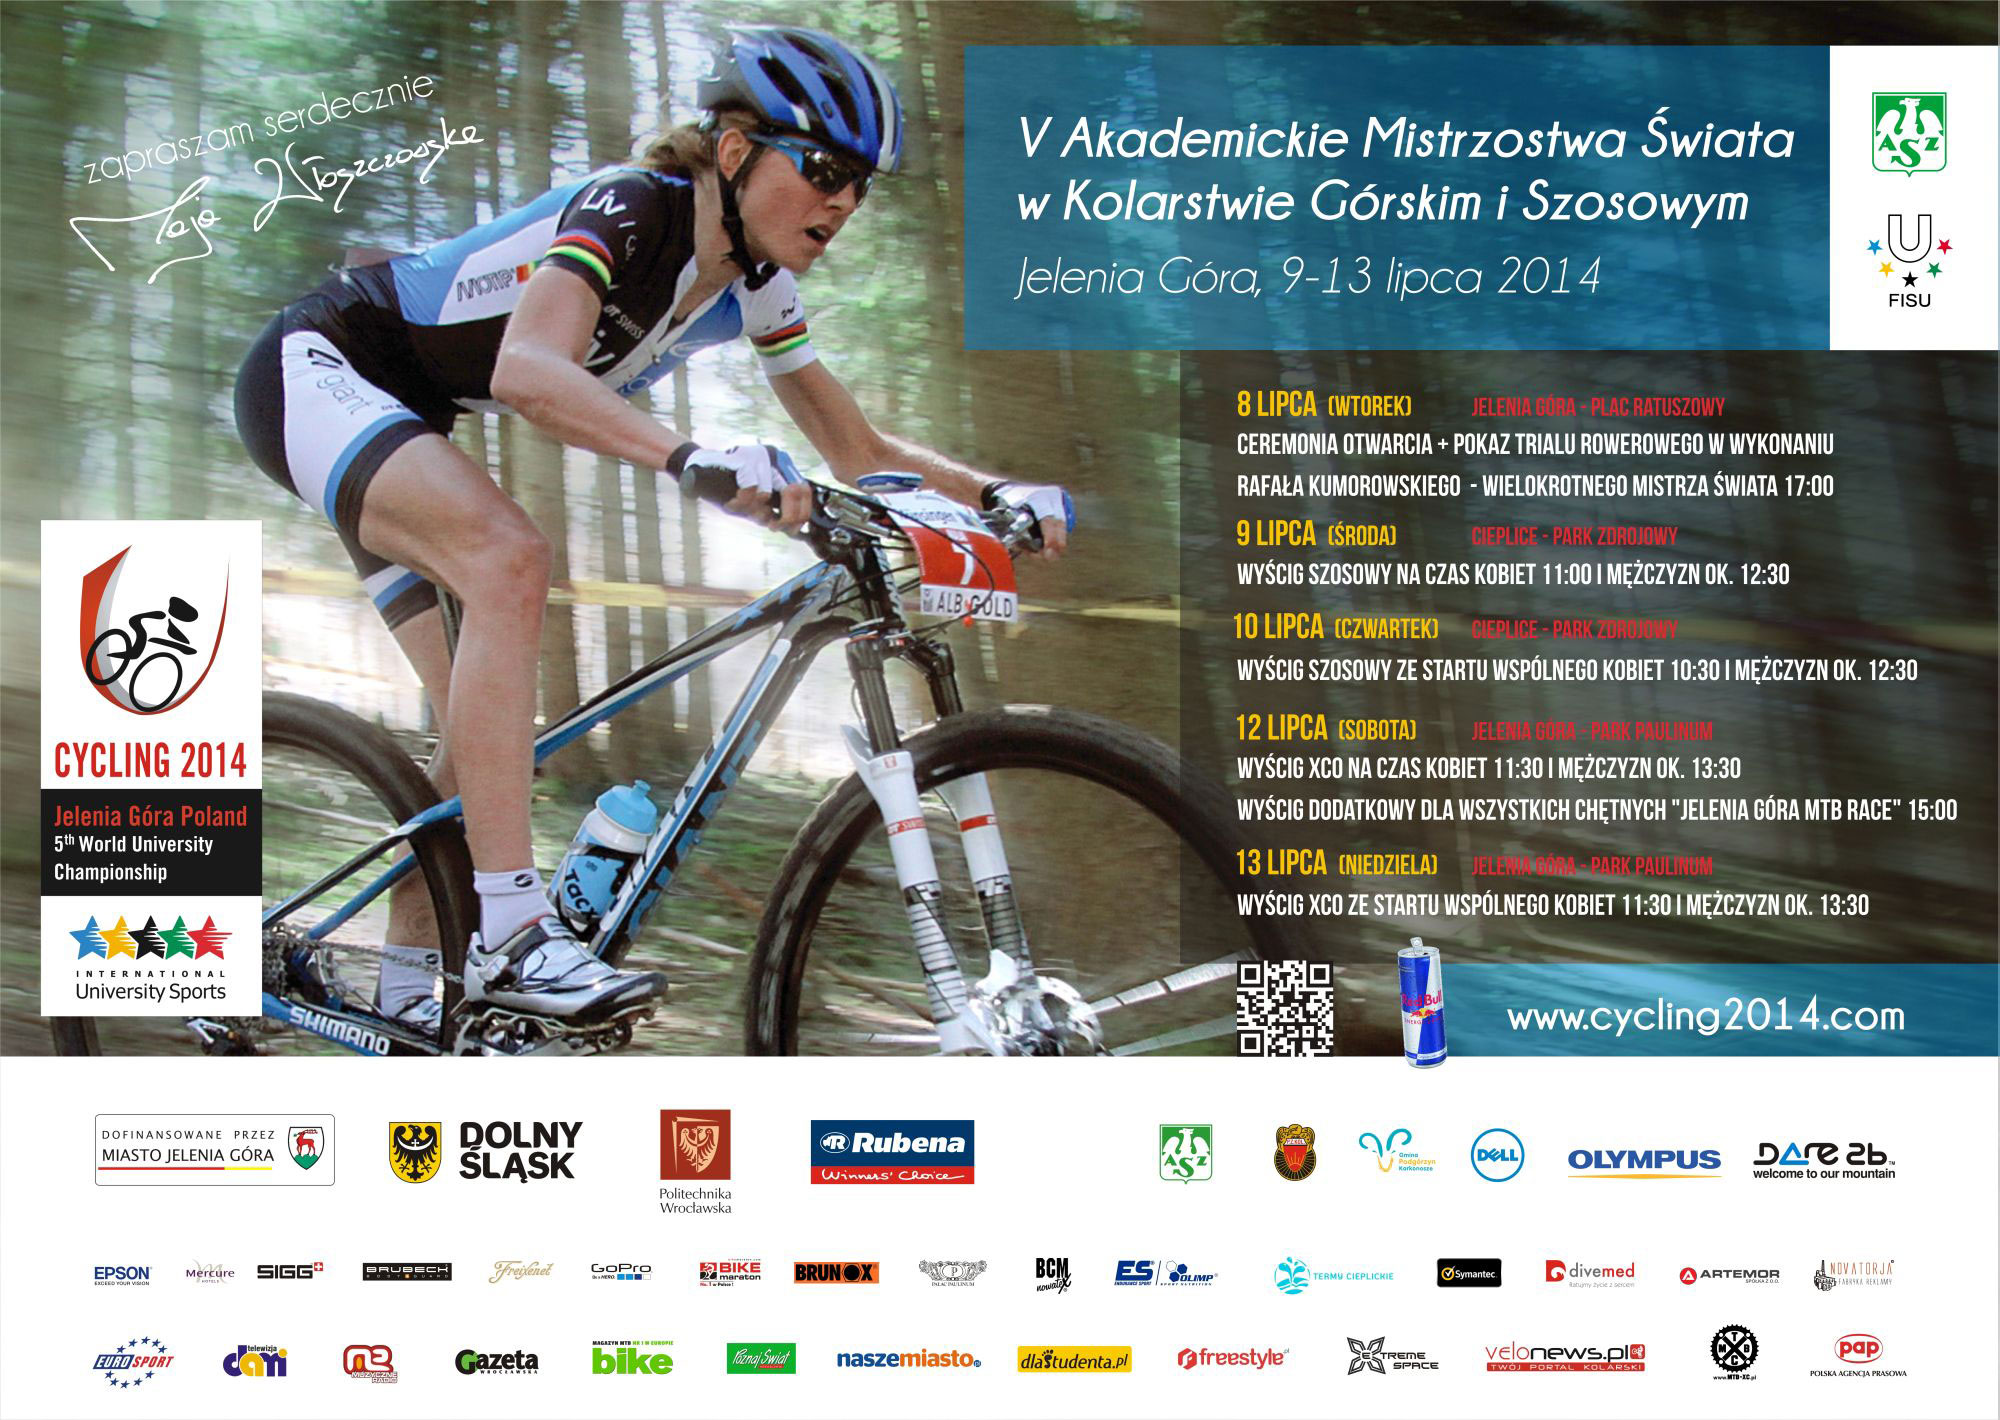 Akademickie-Mistrzostwa-swiata-w-kolarstwie-2014---plakat